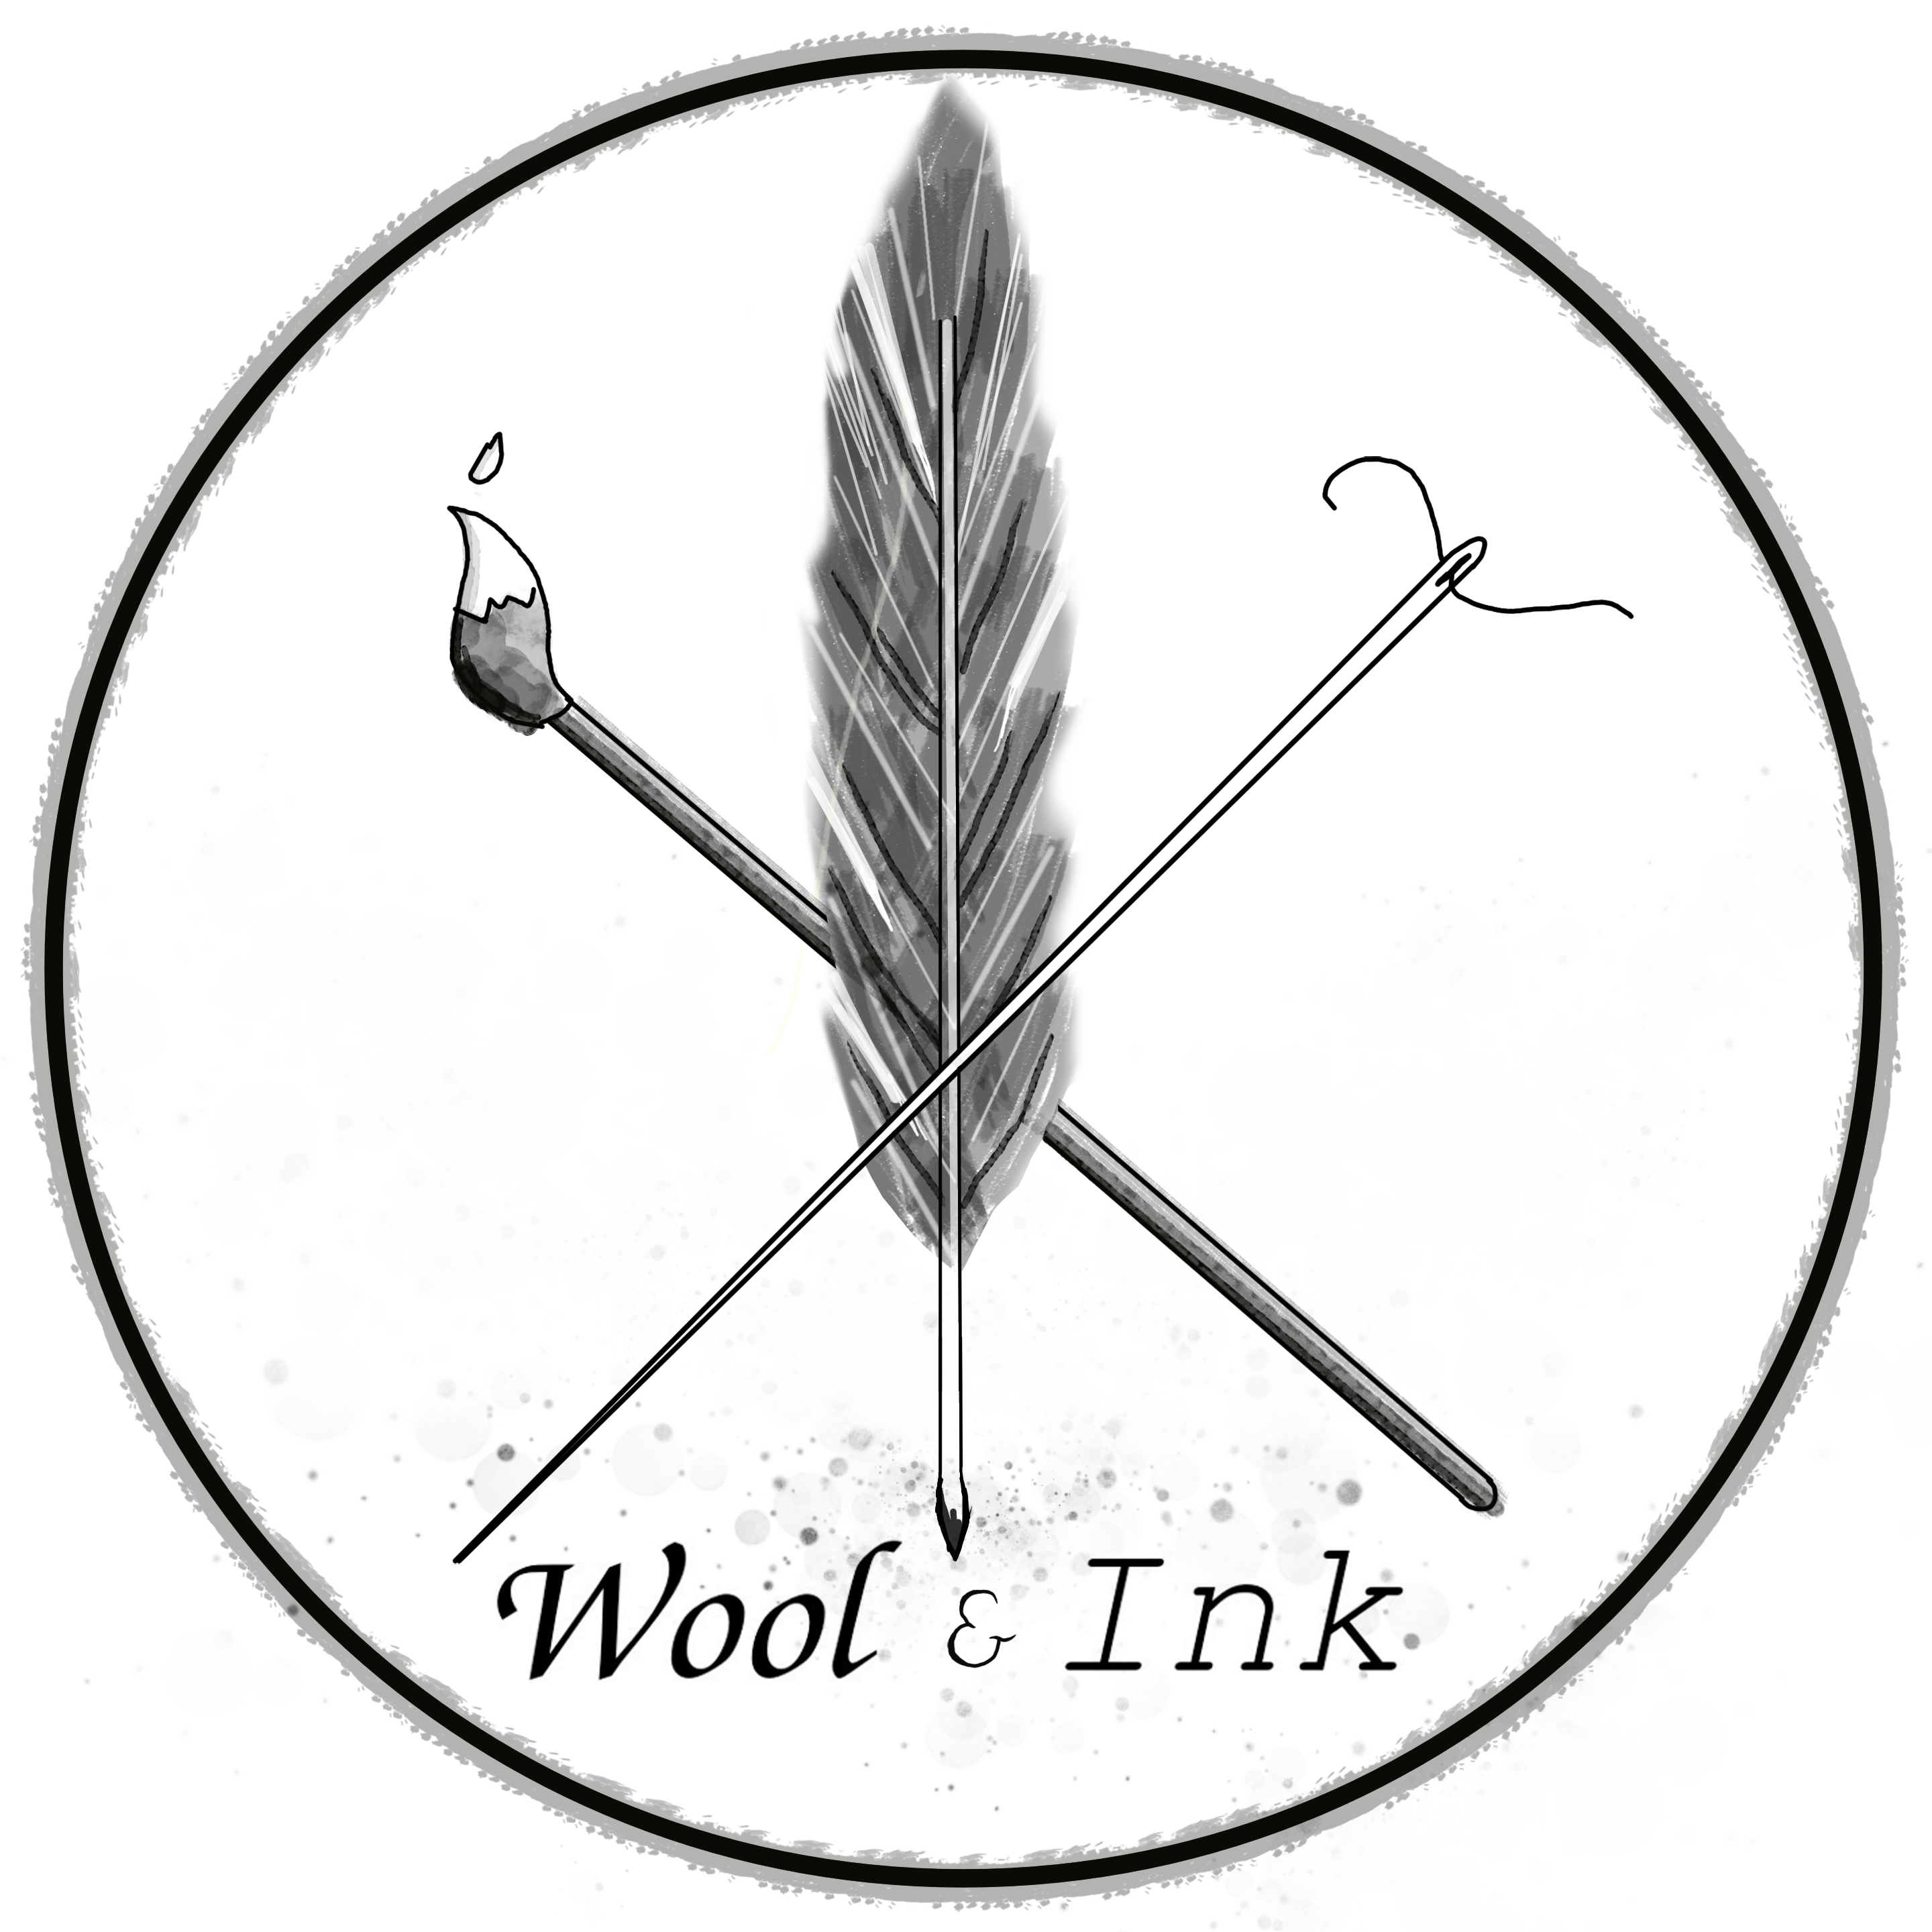 Wool & Ink